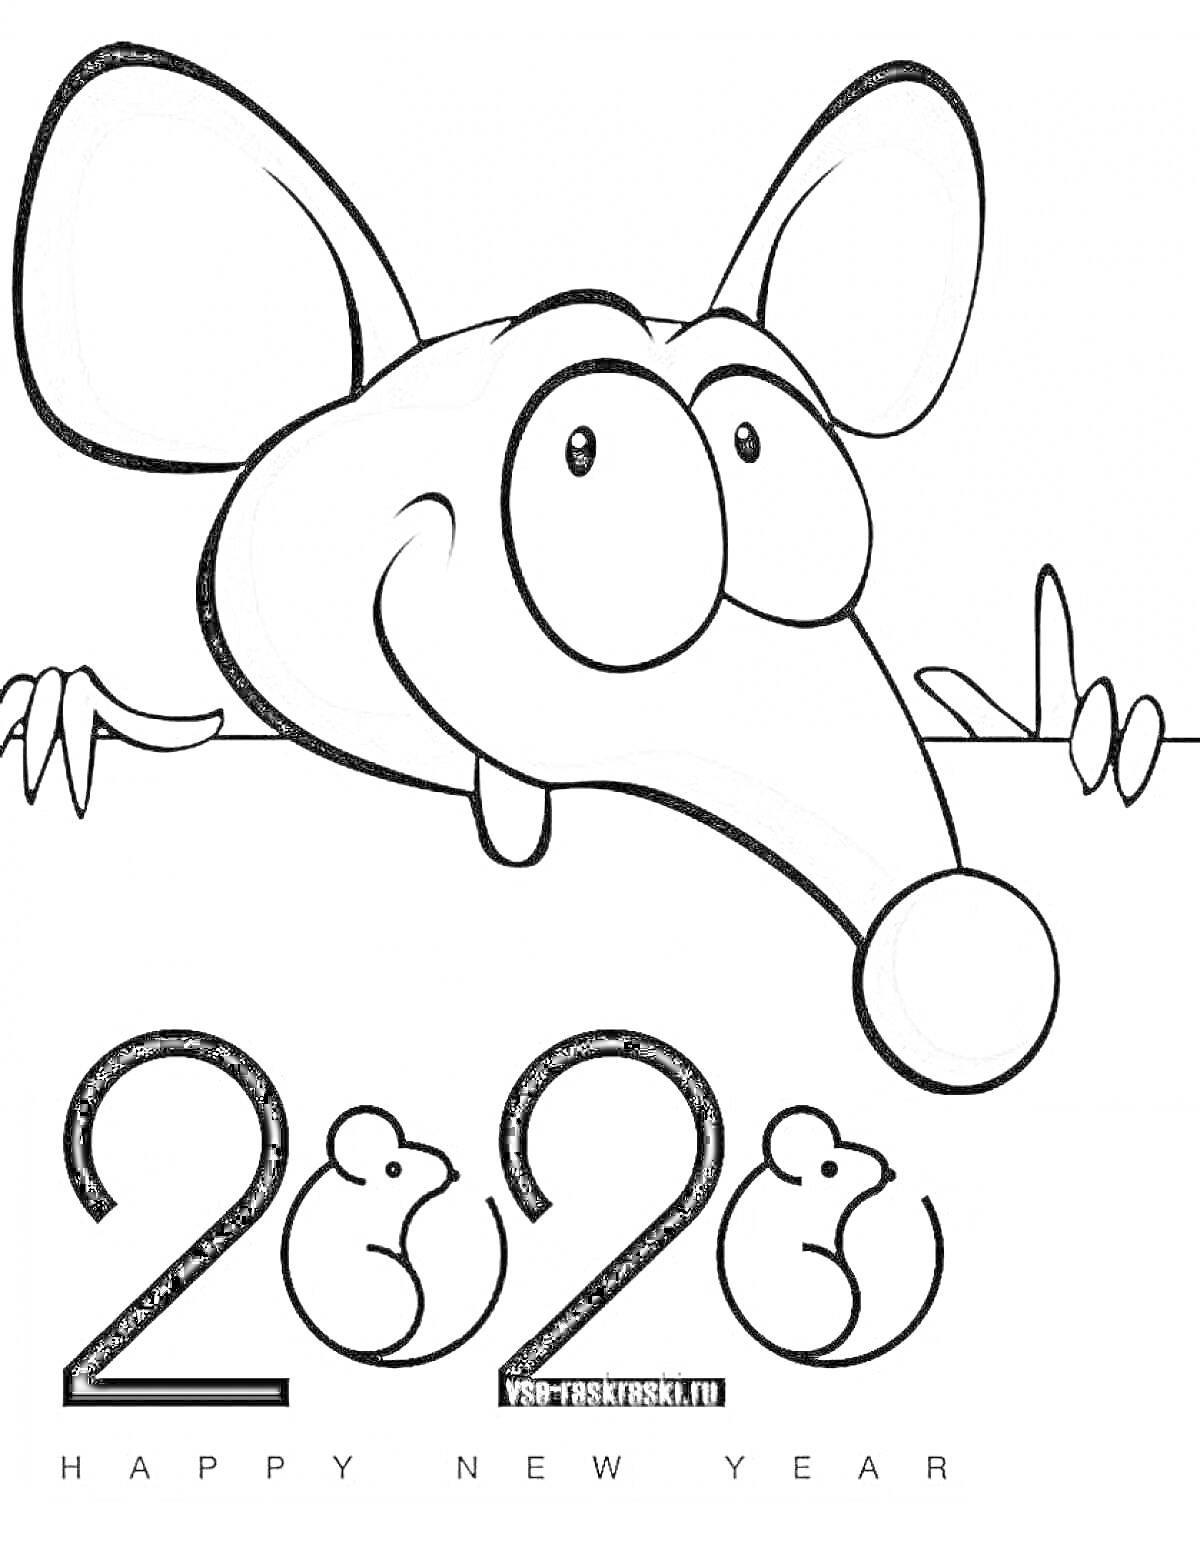 Крыса с большими ушами в 2020 году, с надписью 